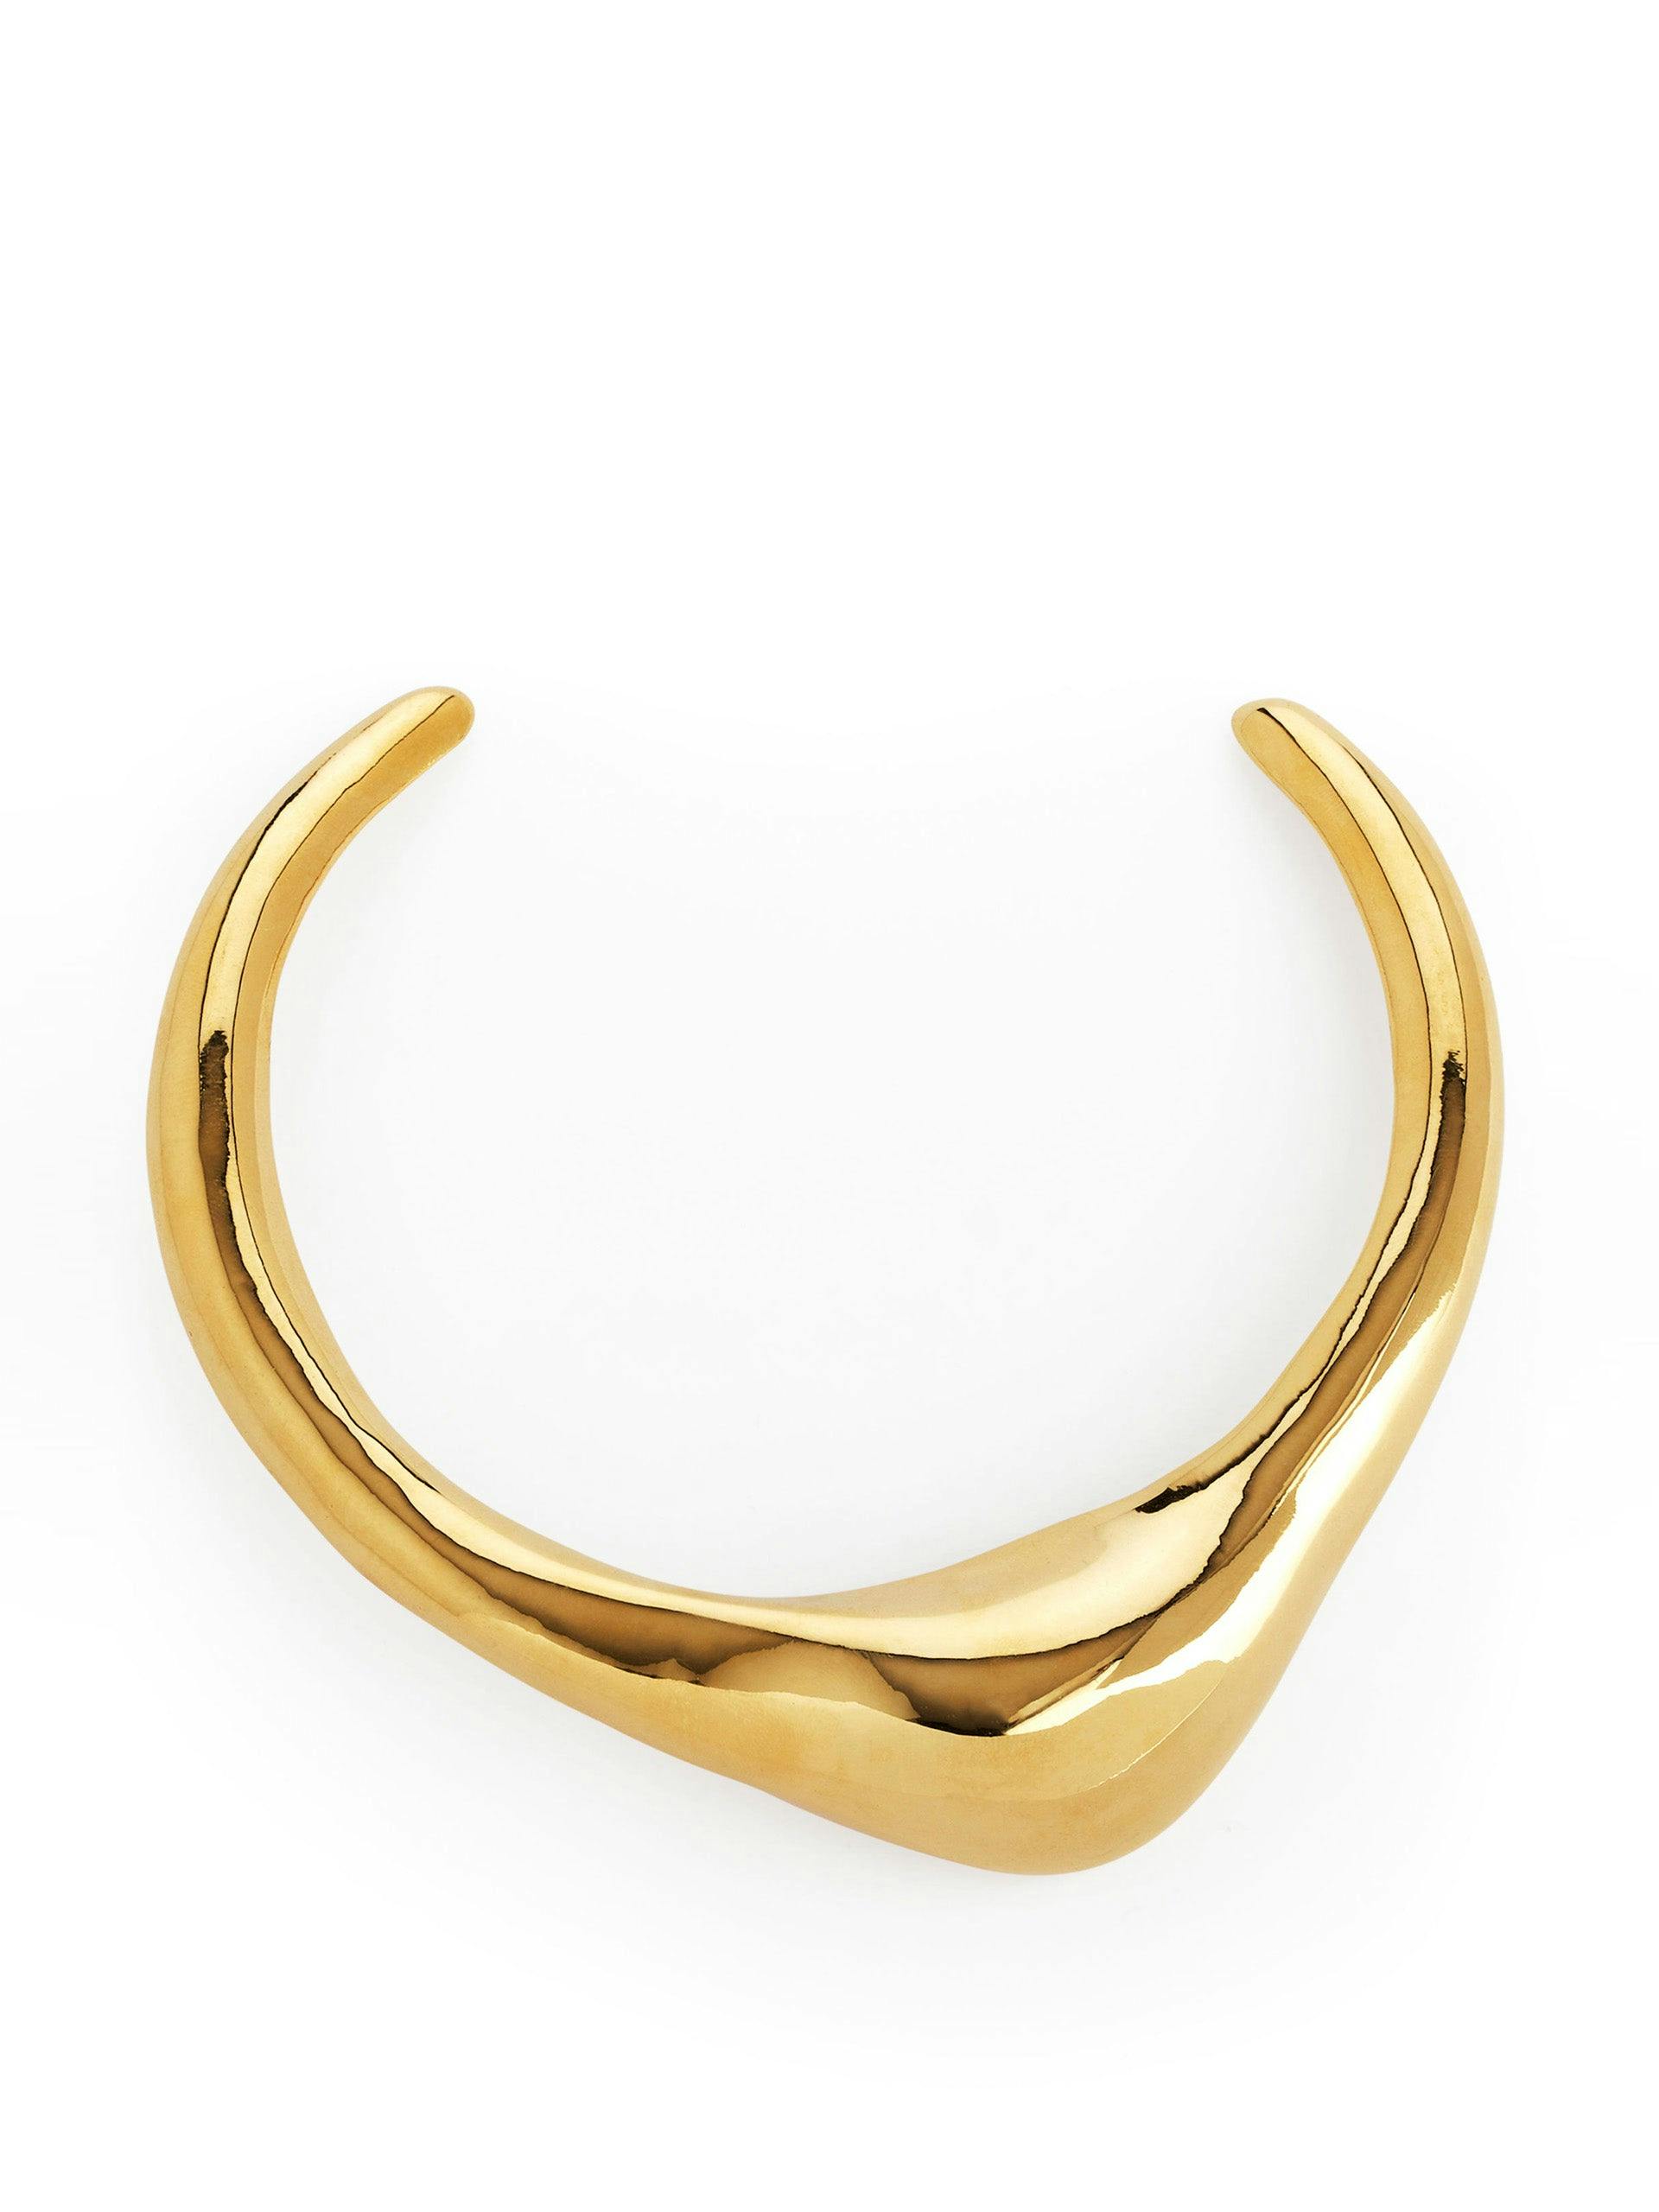 Sculptural gold-plated neck cuff